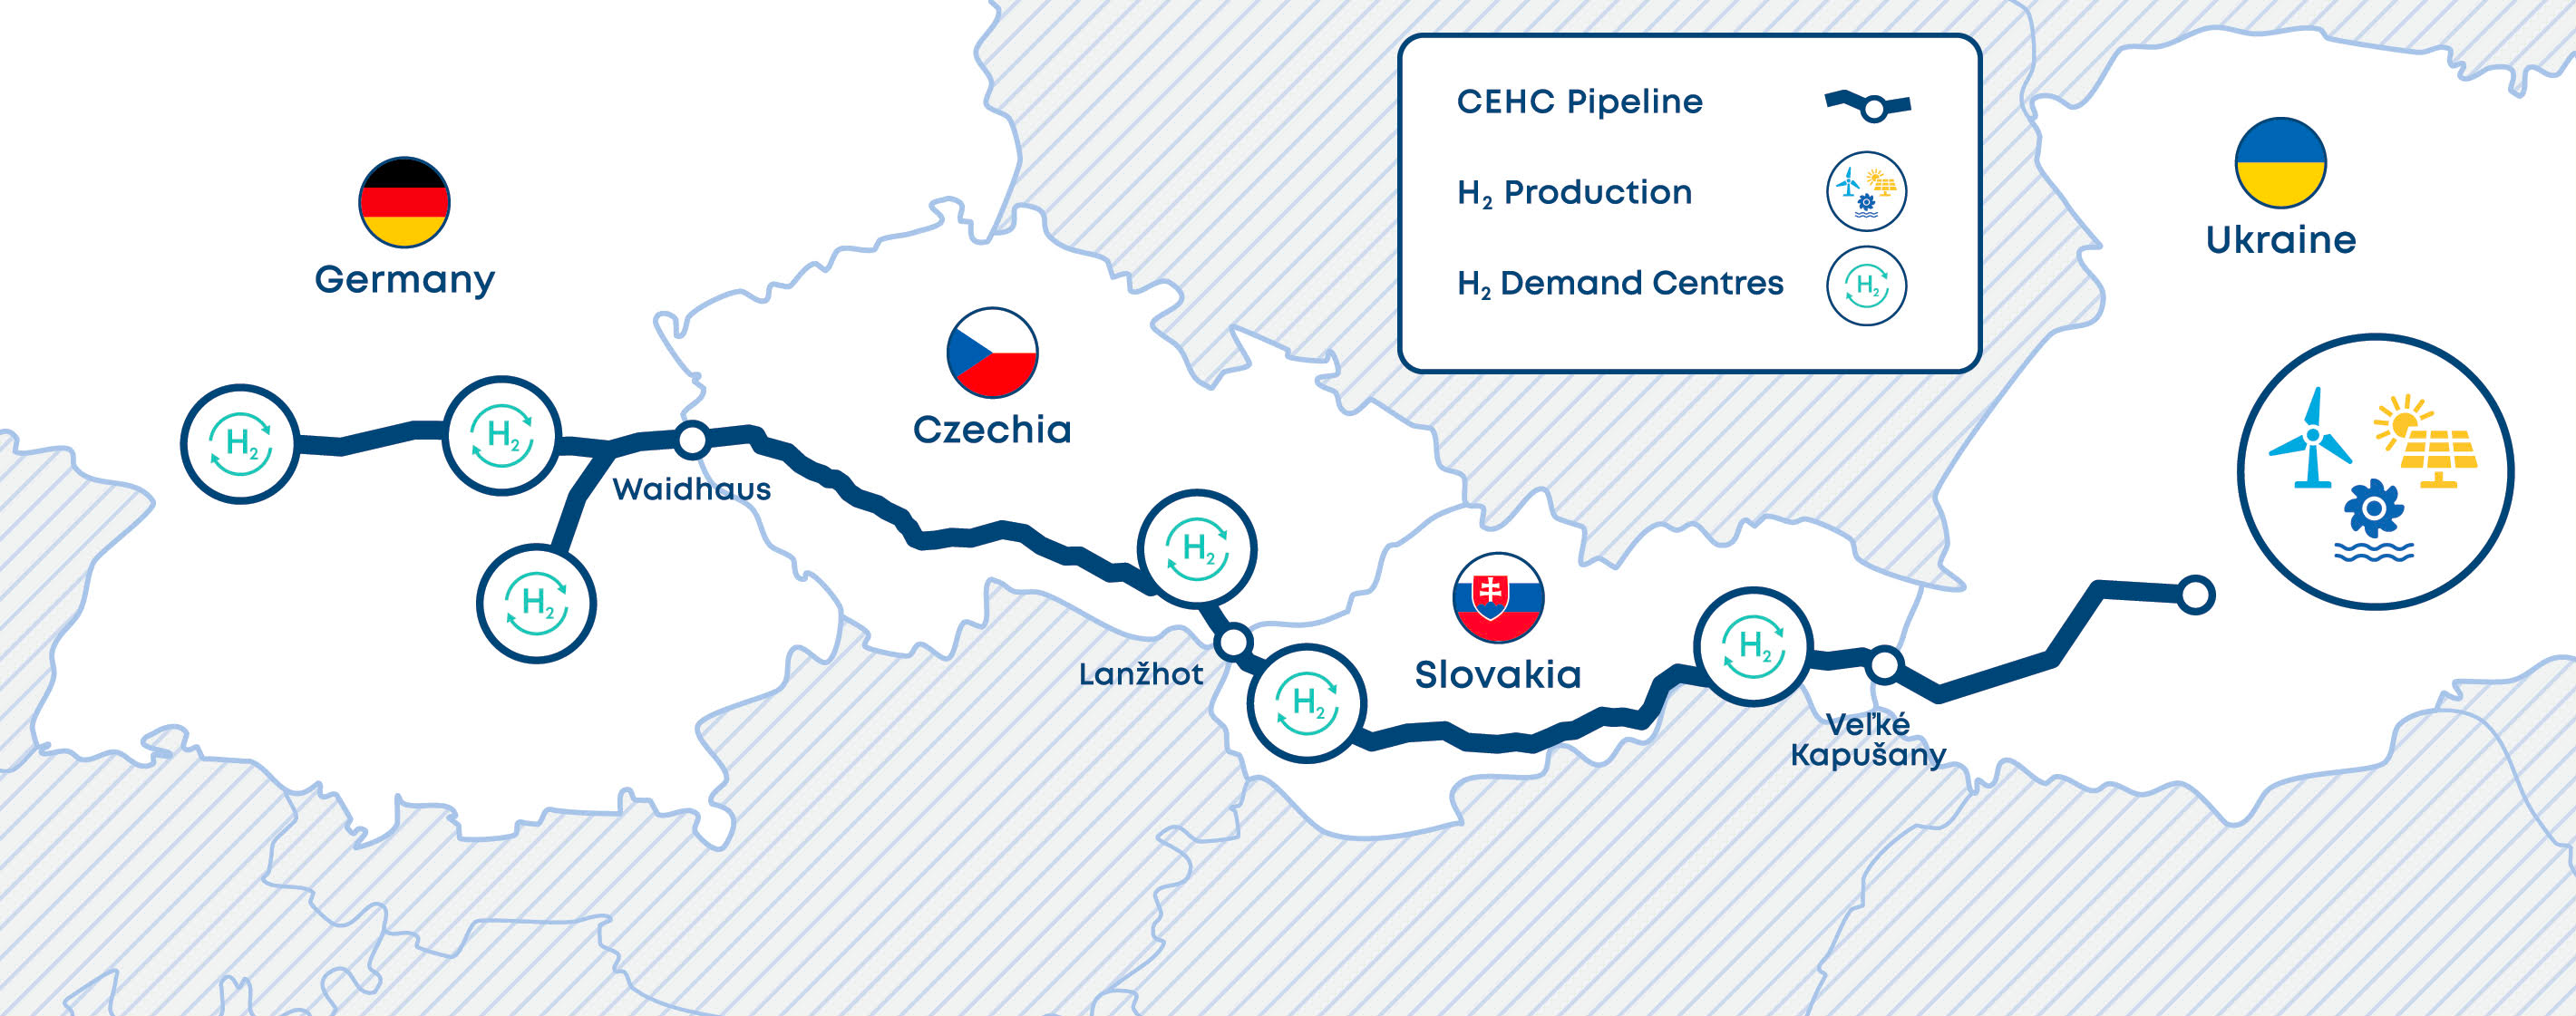 CEHC pipeline